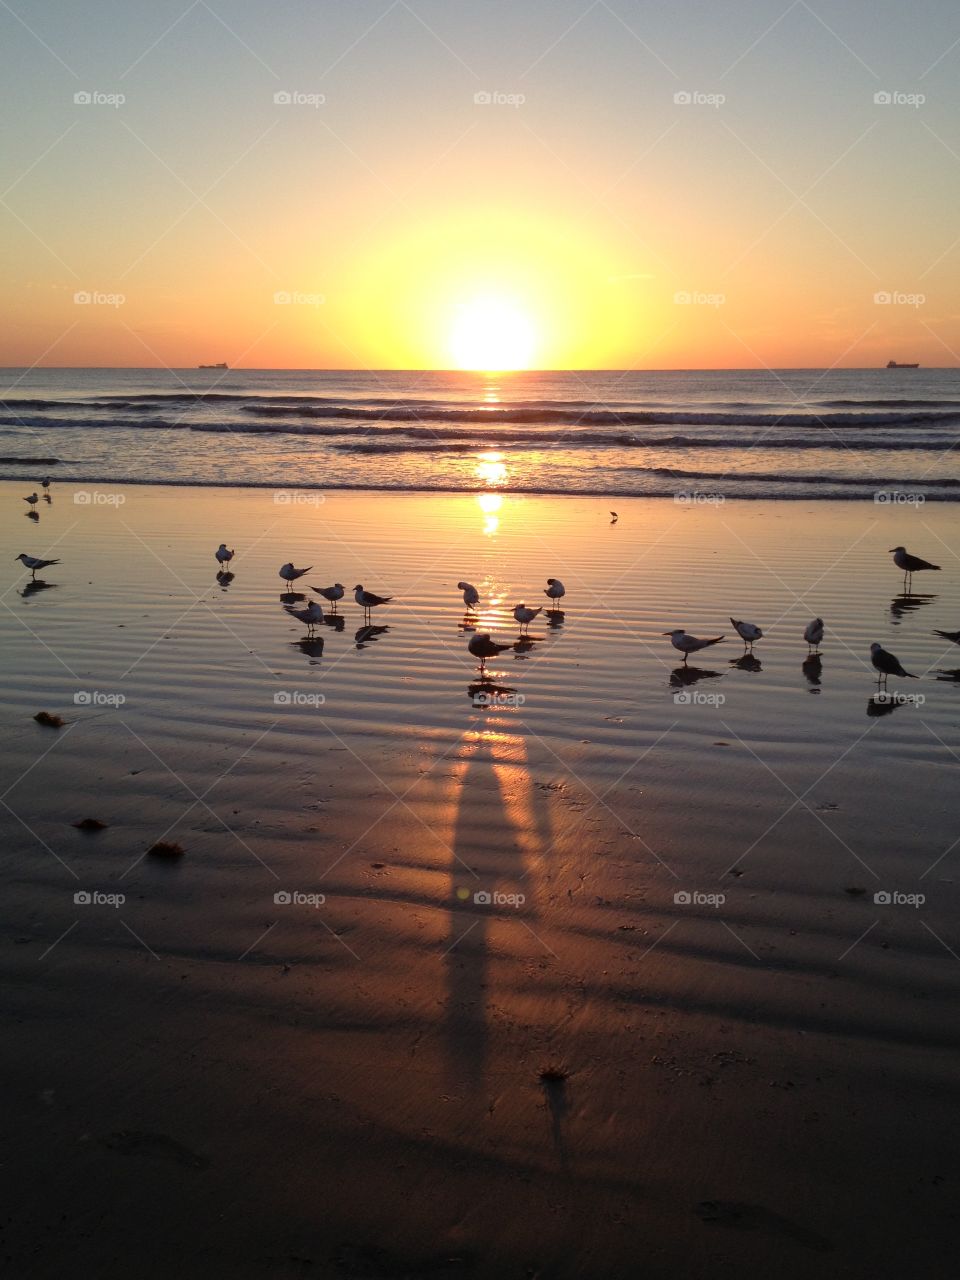 Sunrise on the beach with sea birds 